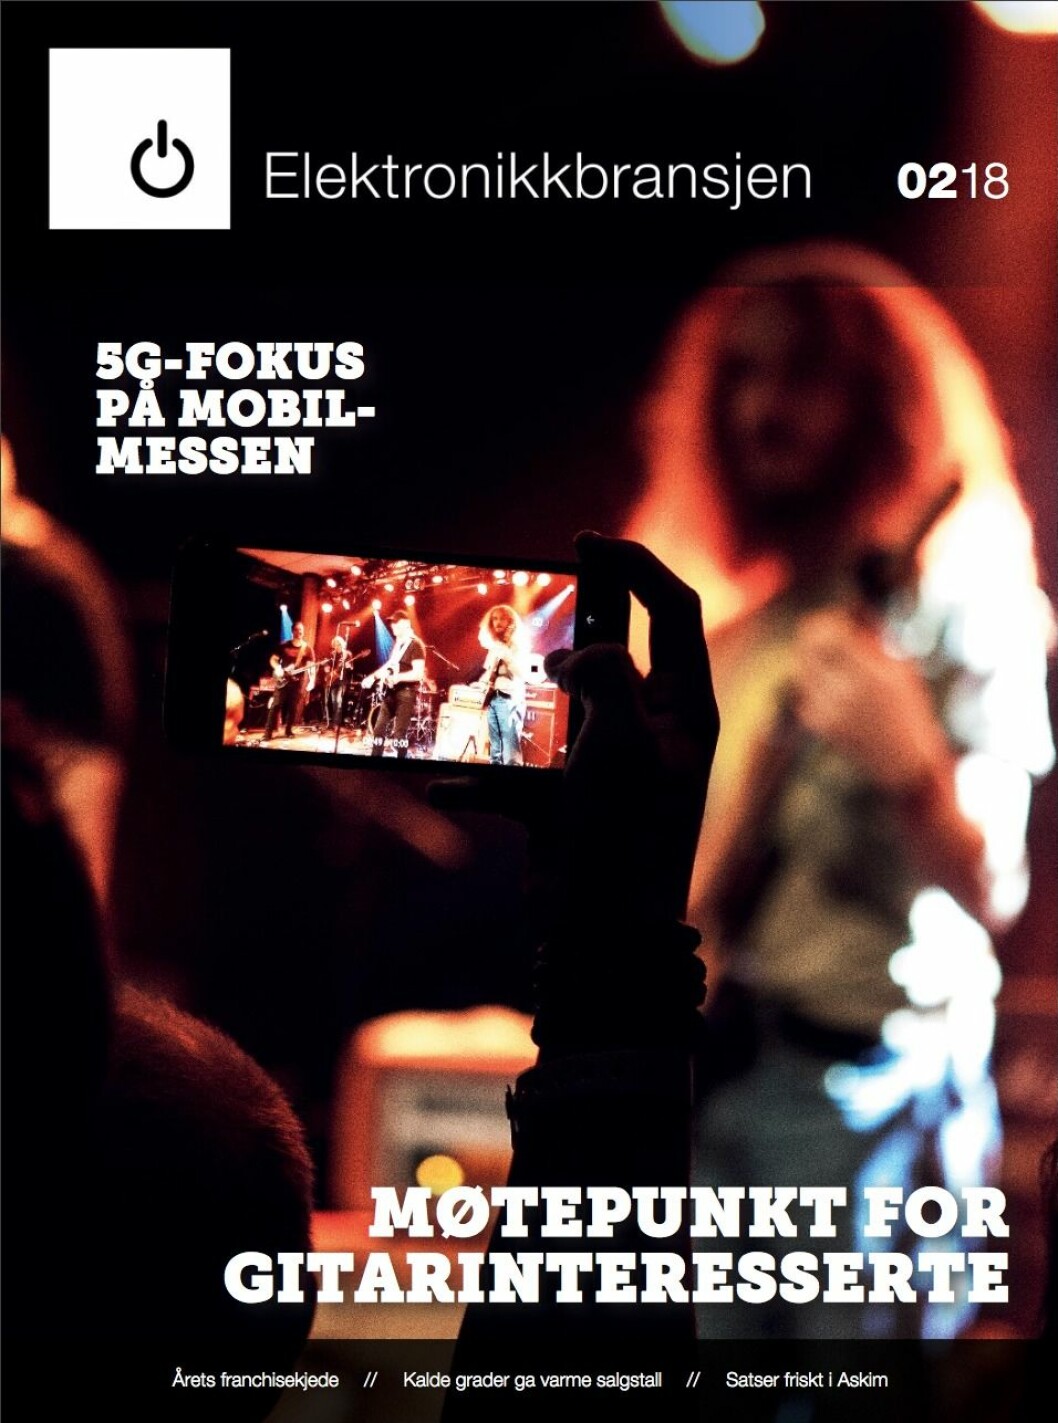 Les alt om Larvik gitarfestival i digitalutgaven av <a href="http://www.mypaper.se/html5/customer/248/11968/?page=1">fagbladet Elektronikkbransjen nr. 2/2018</a>.